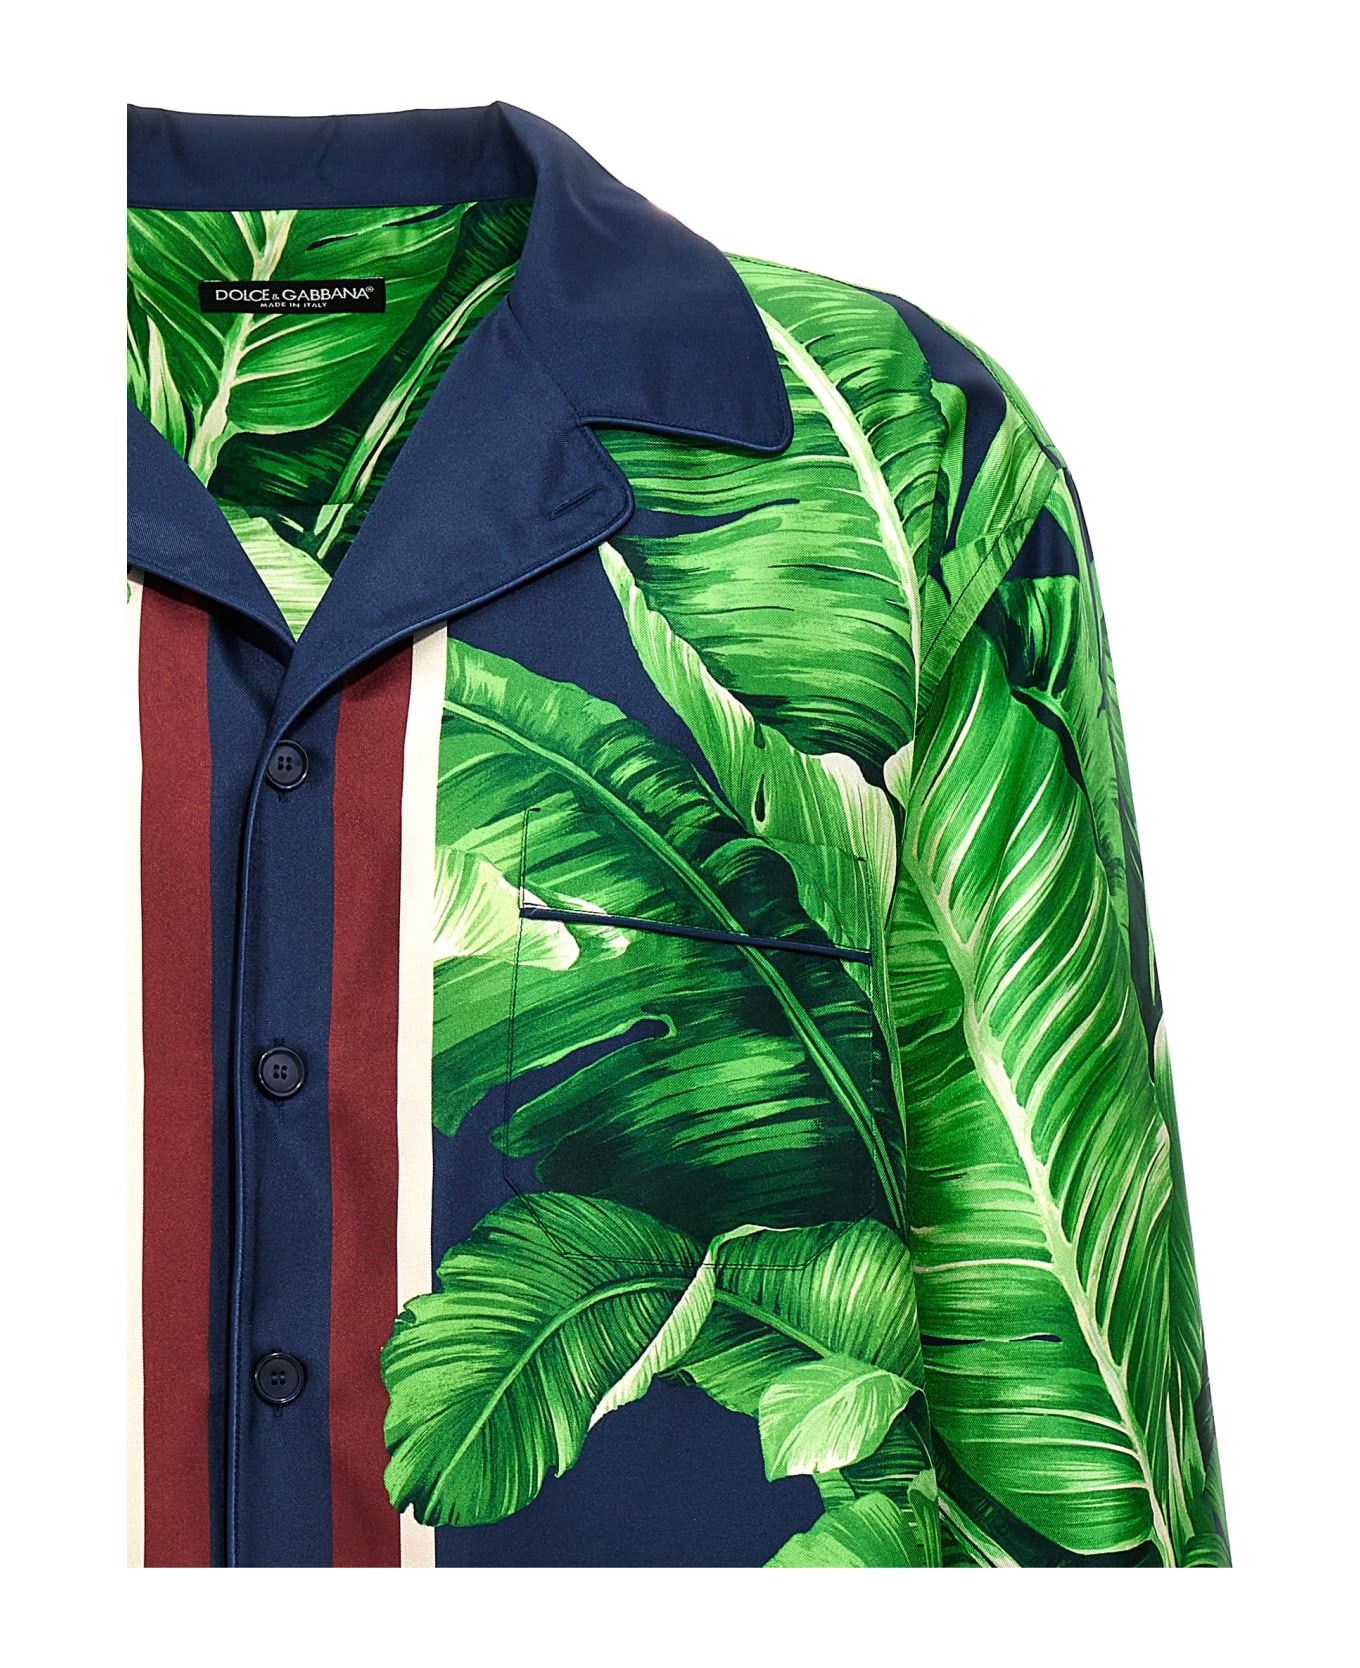 Dolce & Gabbana 'banano' Shirt - Green シャツ